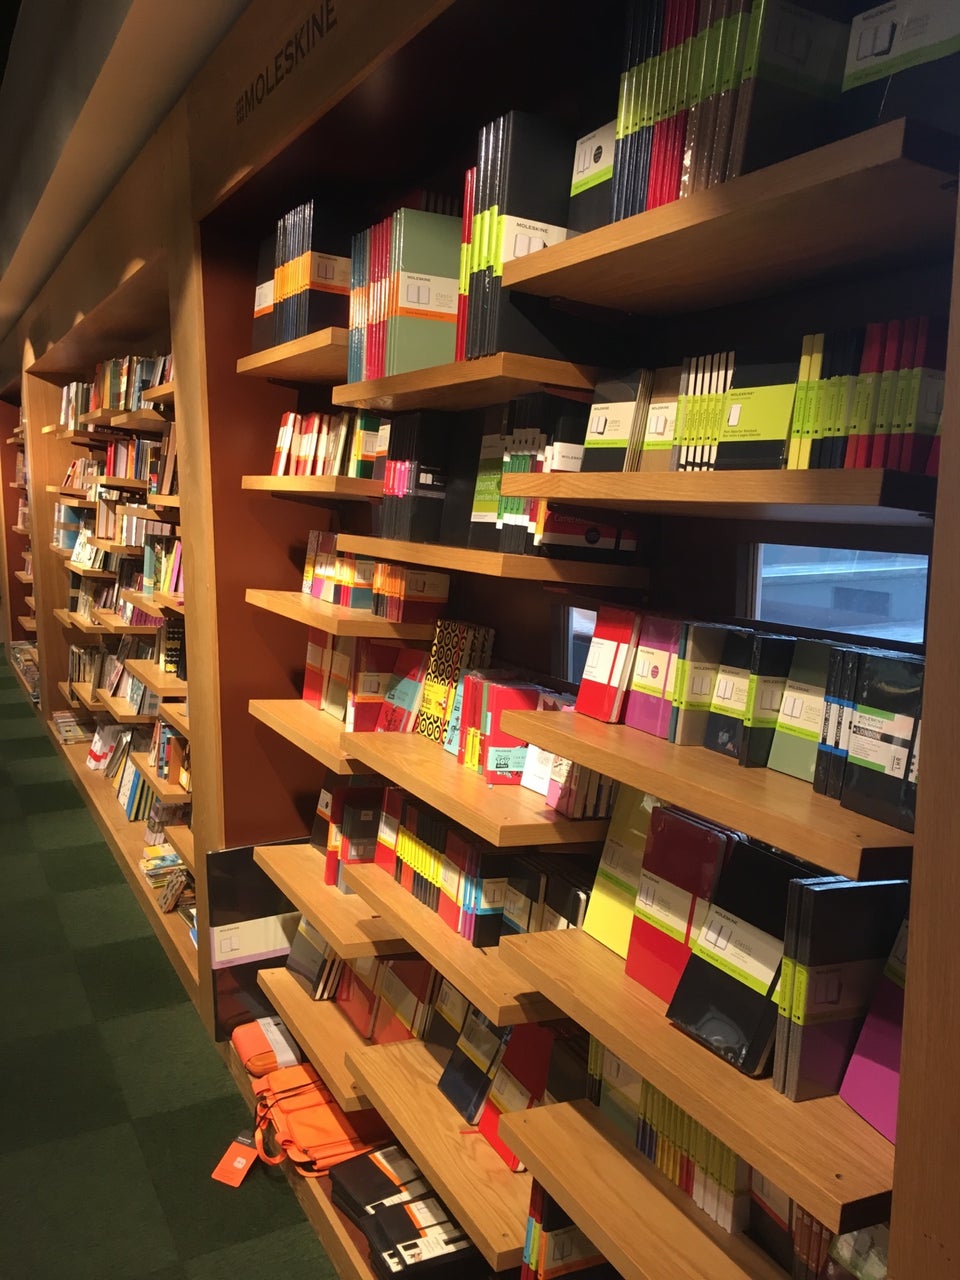 Photo of Rahva Raamat Bookshop